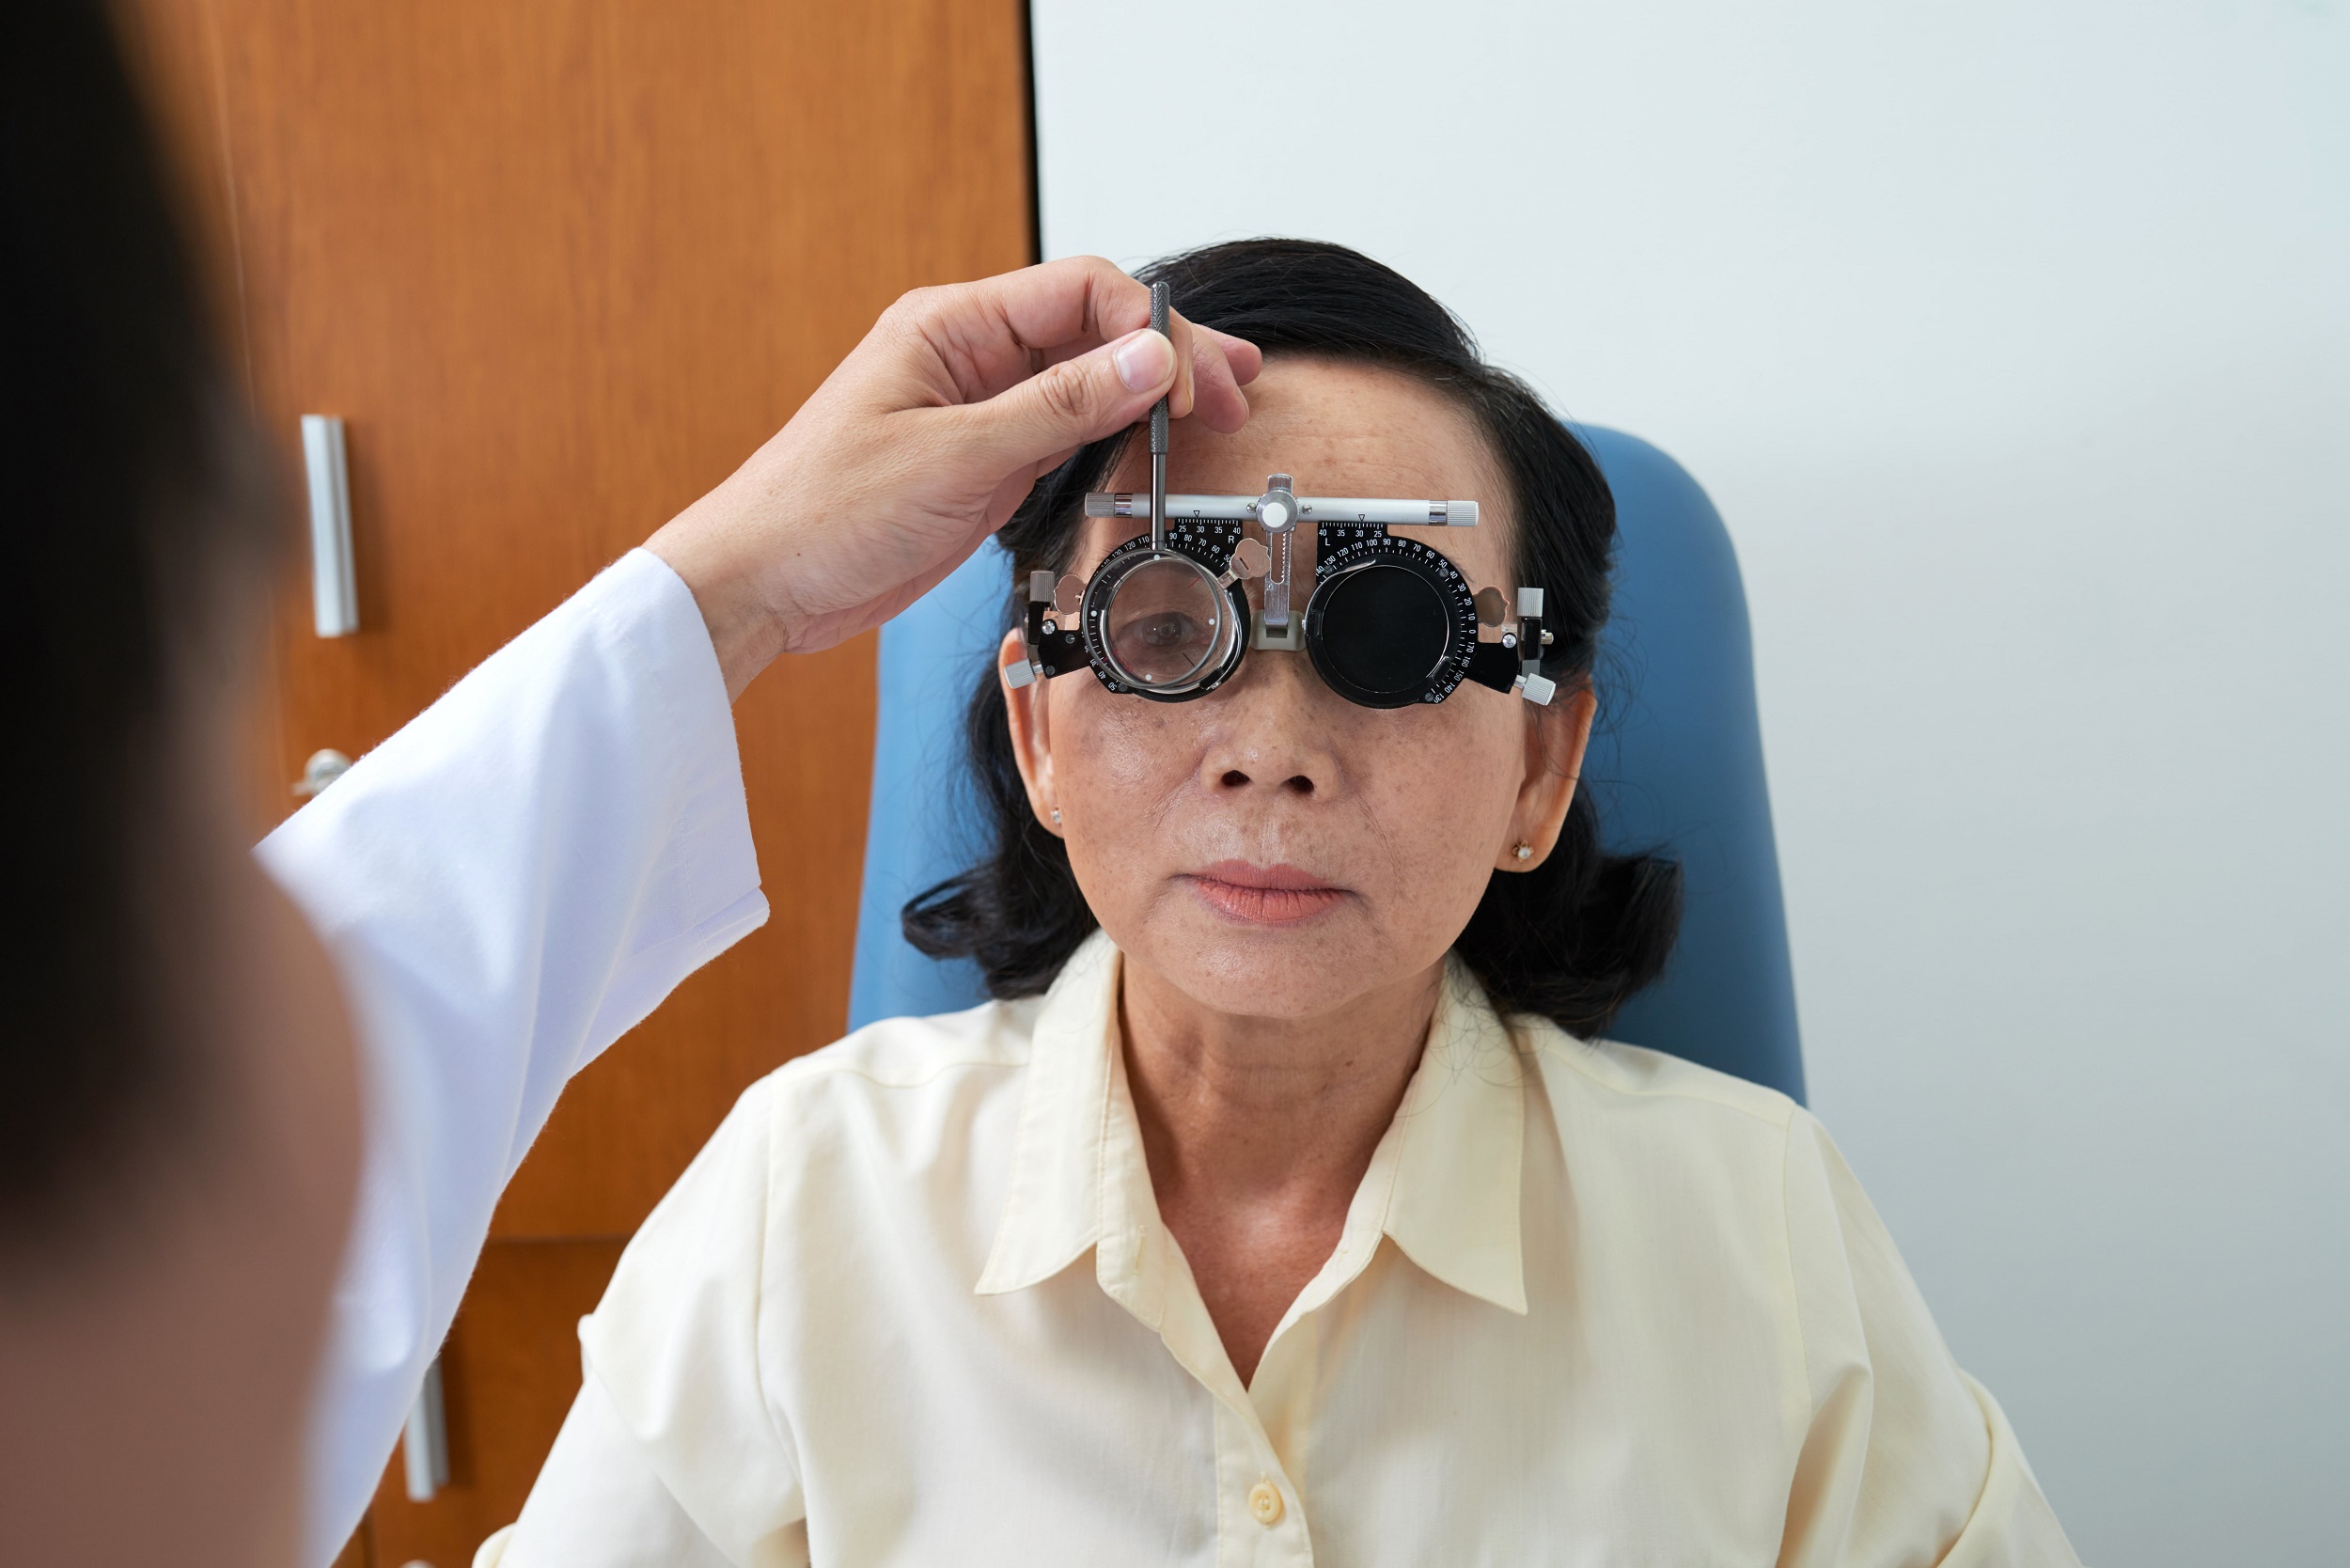 Diagnosis Transient vision loss